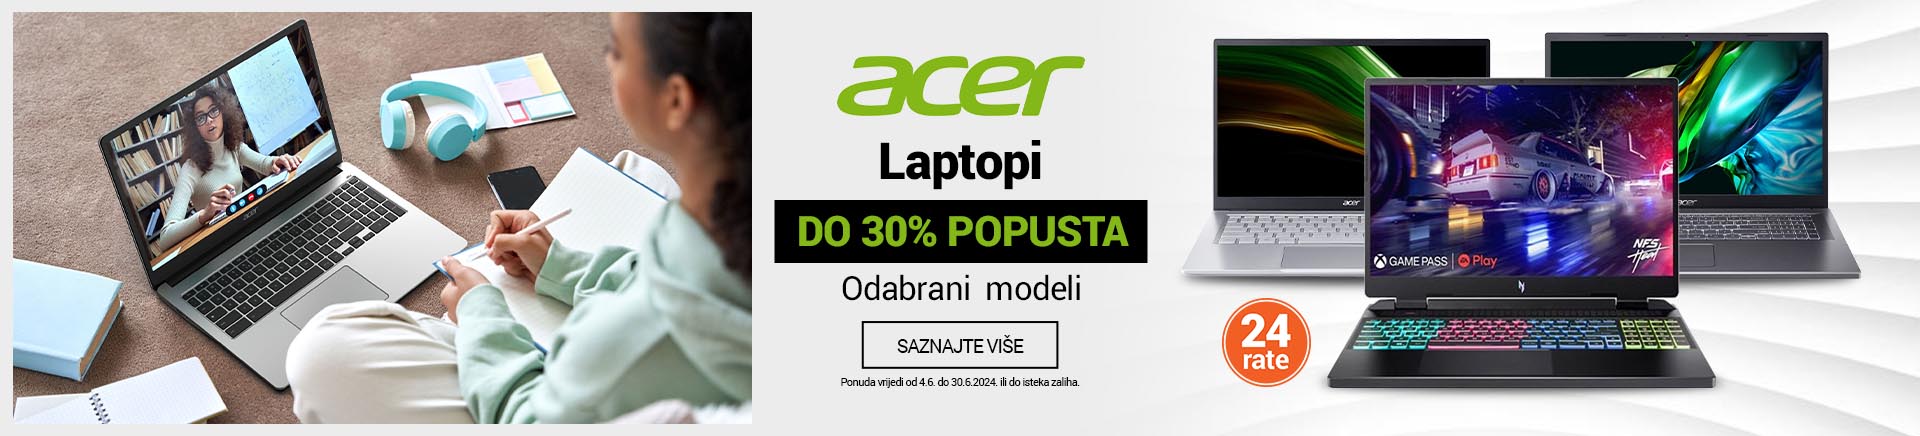 HR Acer laptopi 30posto MOBILE 380 X 436.jpg